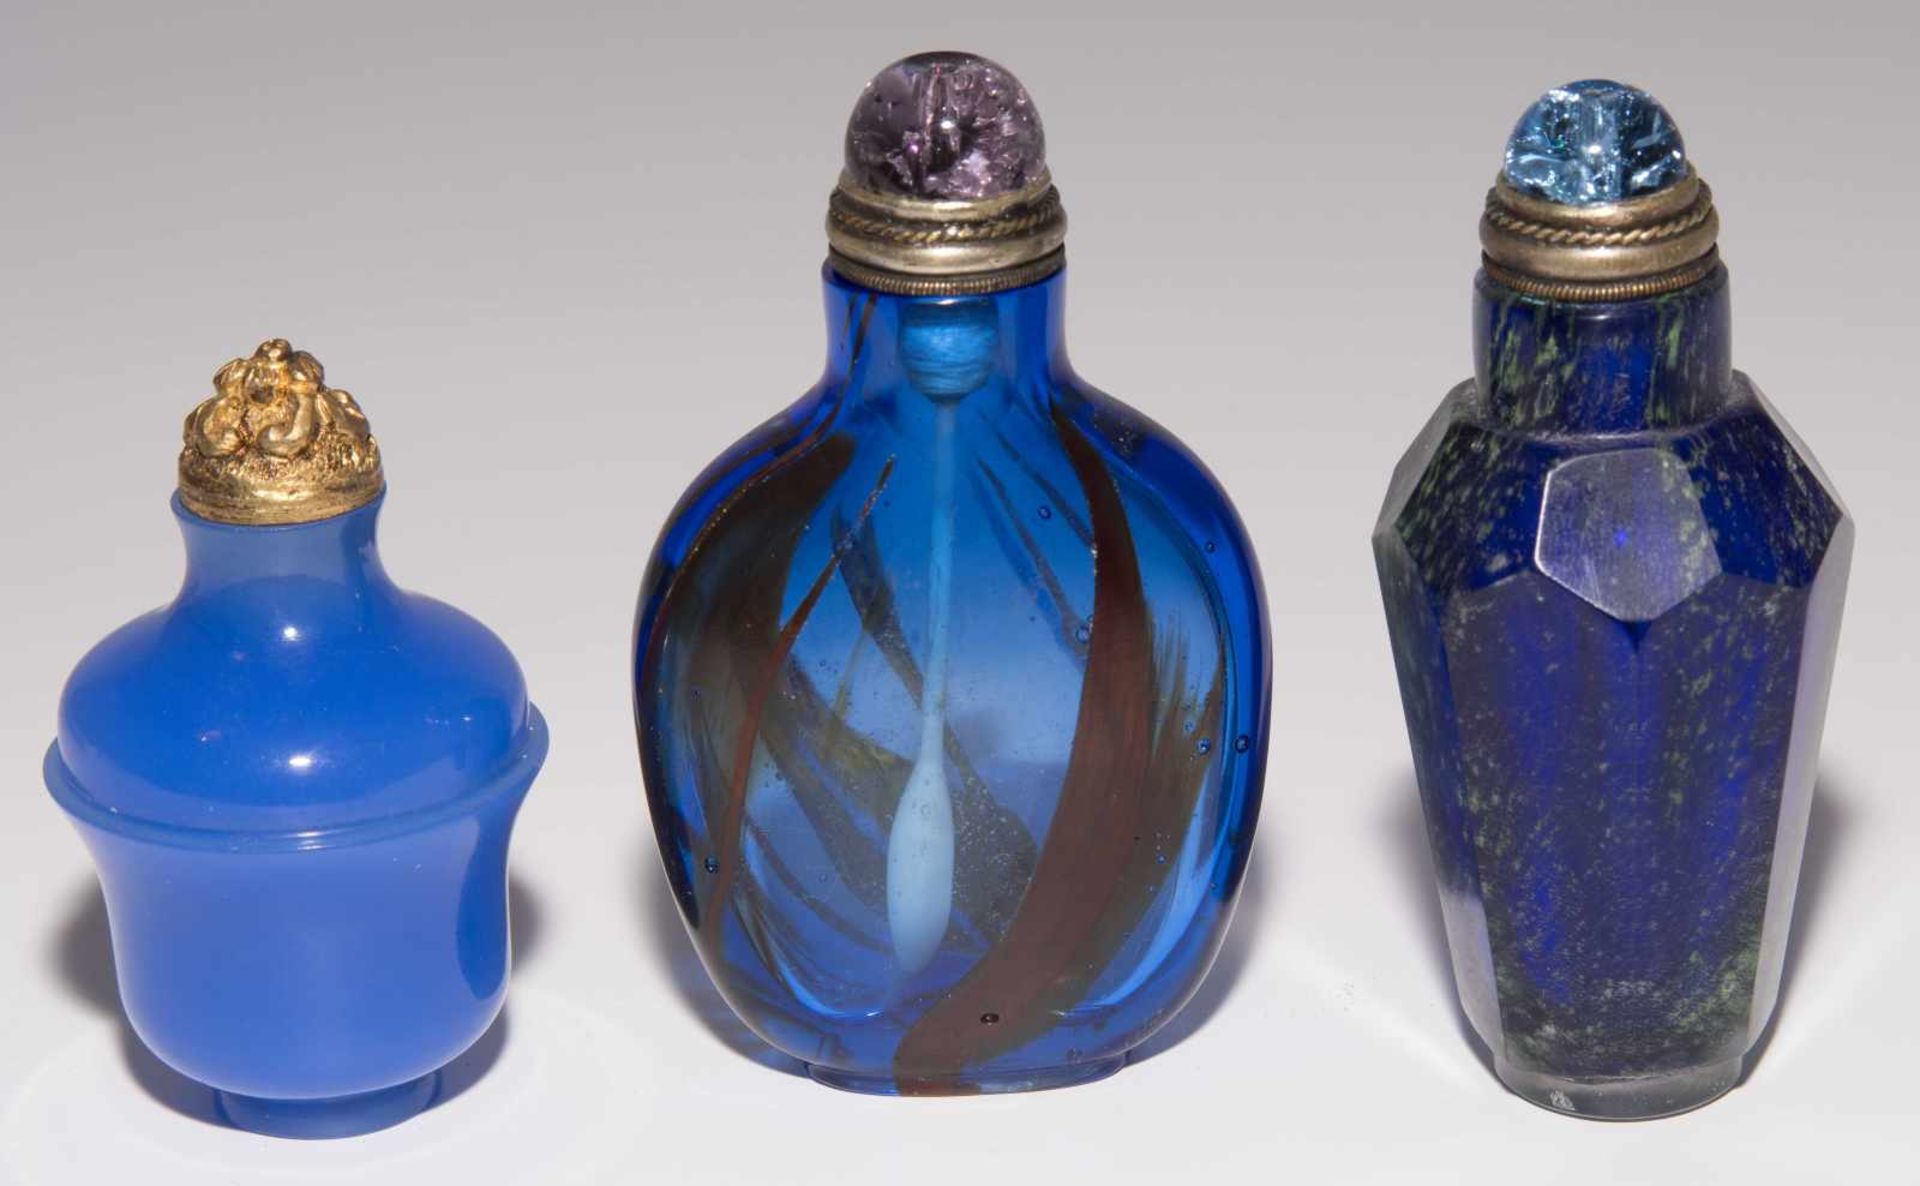 6 Glas Snuff BottlesChina. Opakes und transparentes Glas in verschiedenen Blautönen tlw. bunt - Image 2 of 15